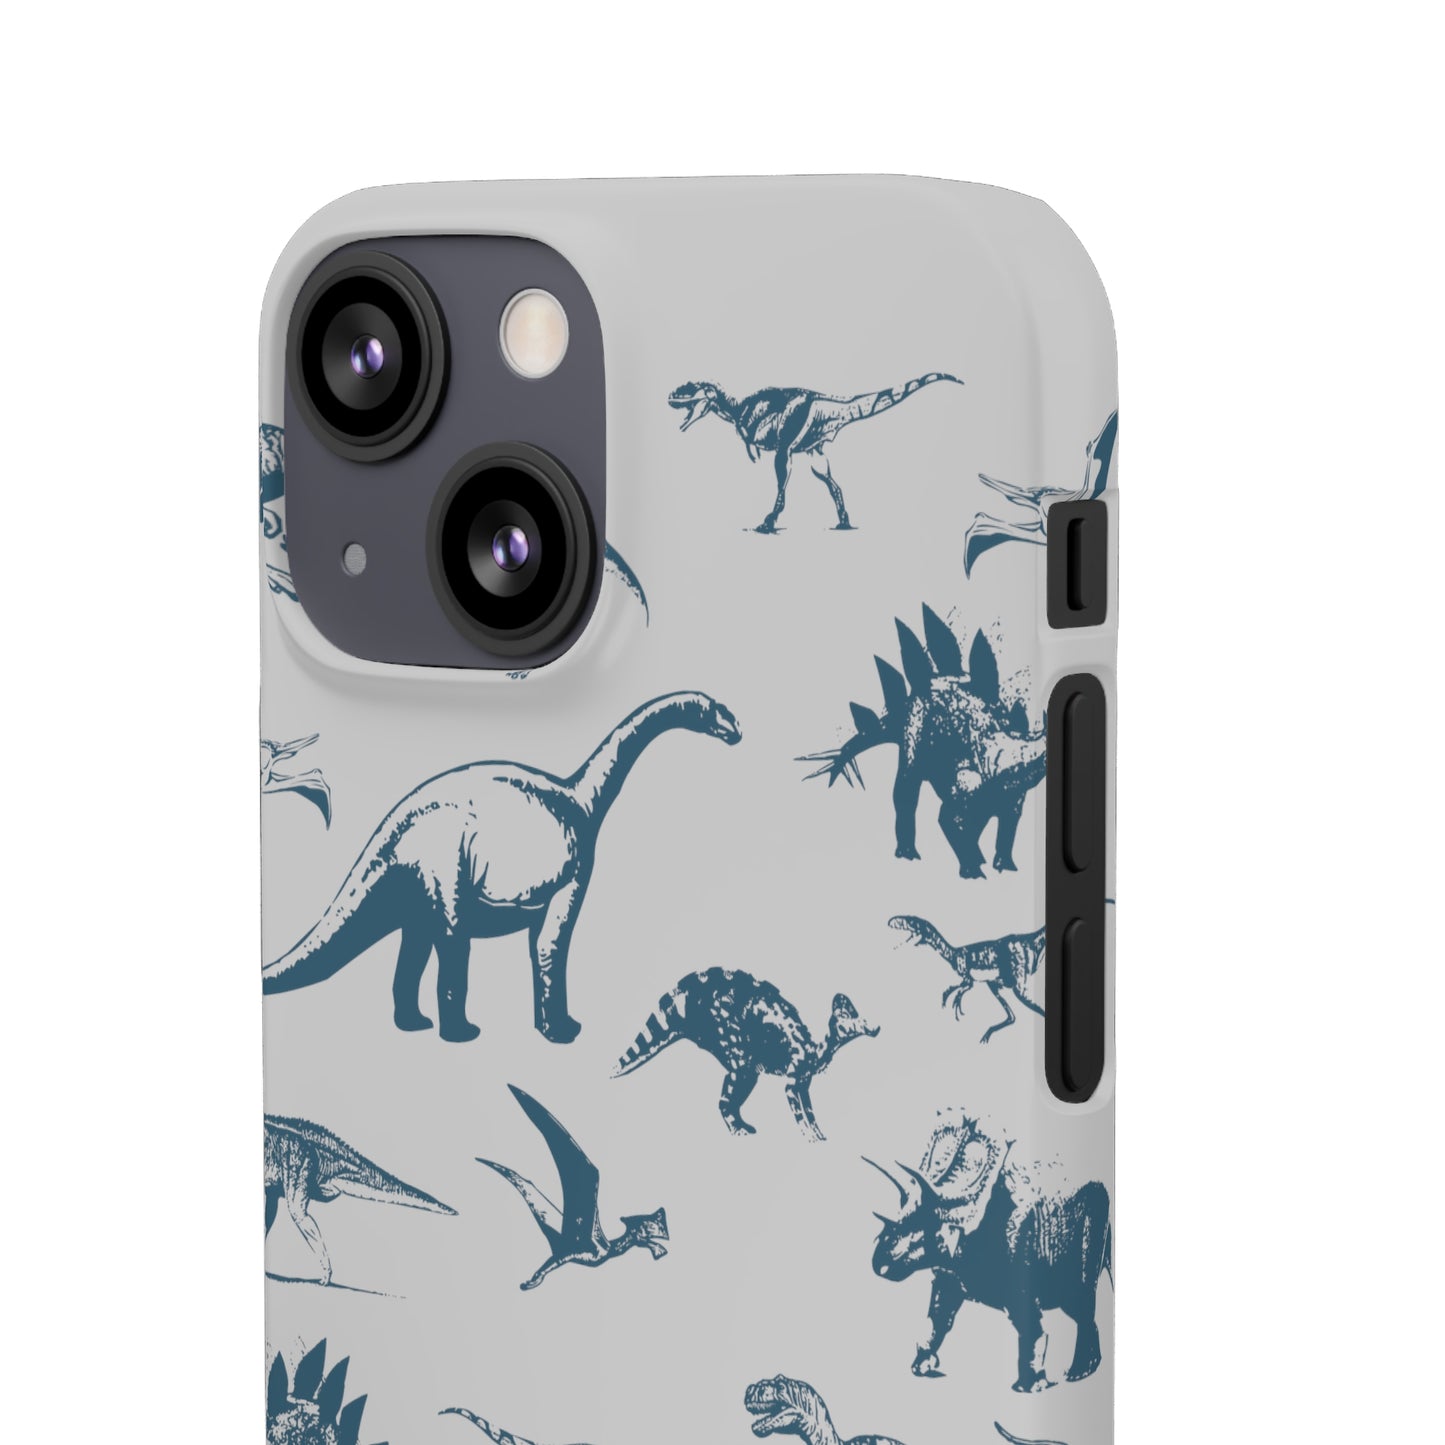 Dinosaur Snap Cases